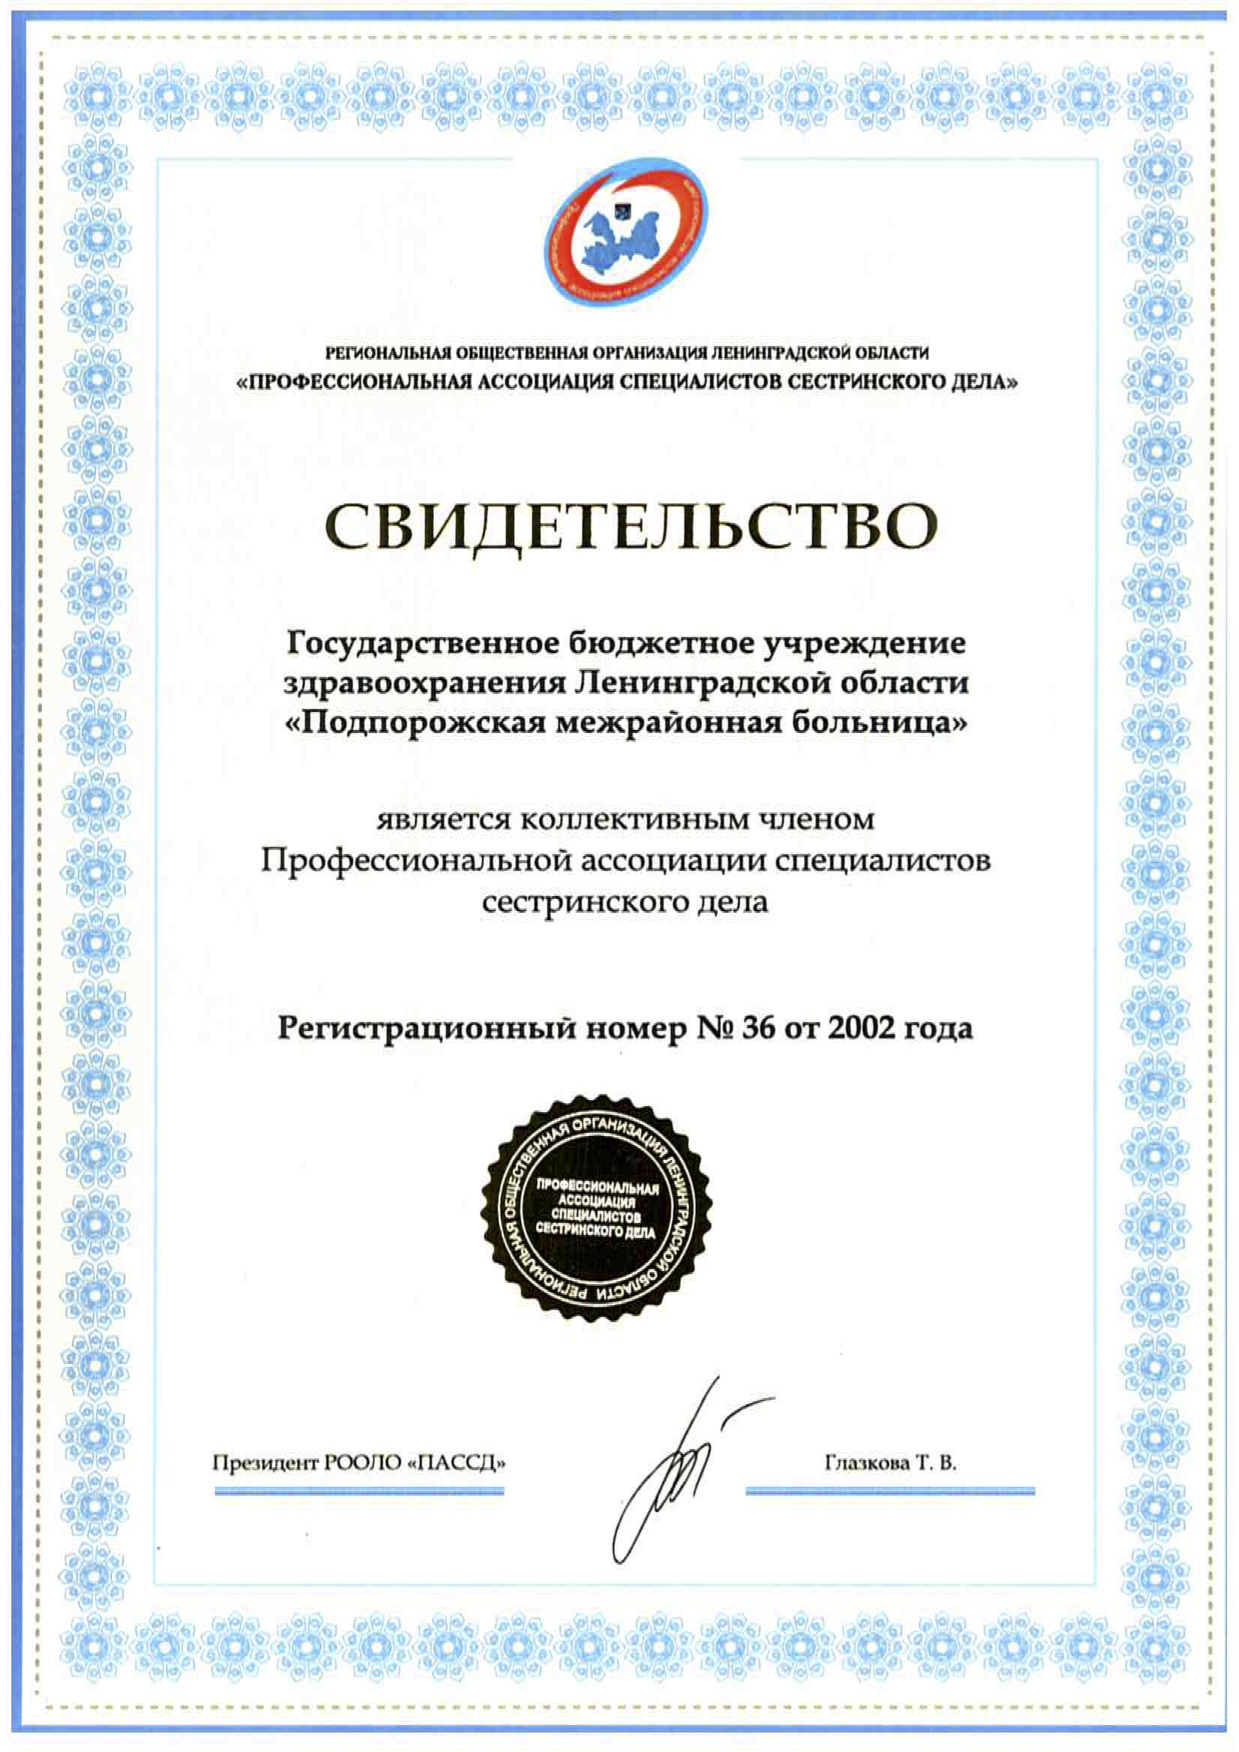 ГБУЗ ЛО "Подпорожская МБ": сертификат